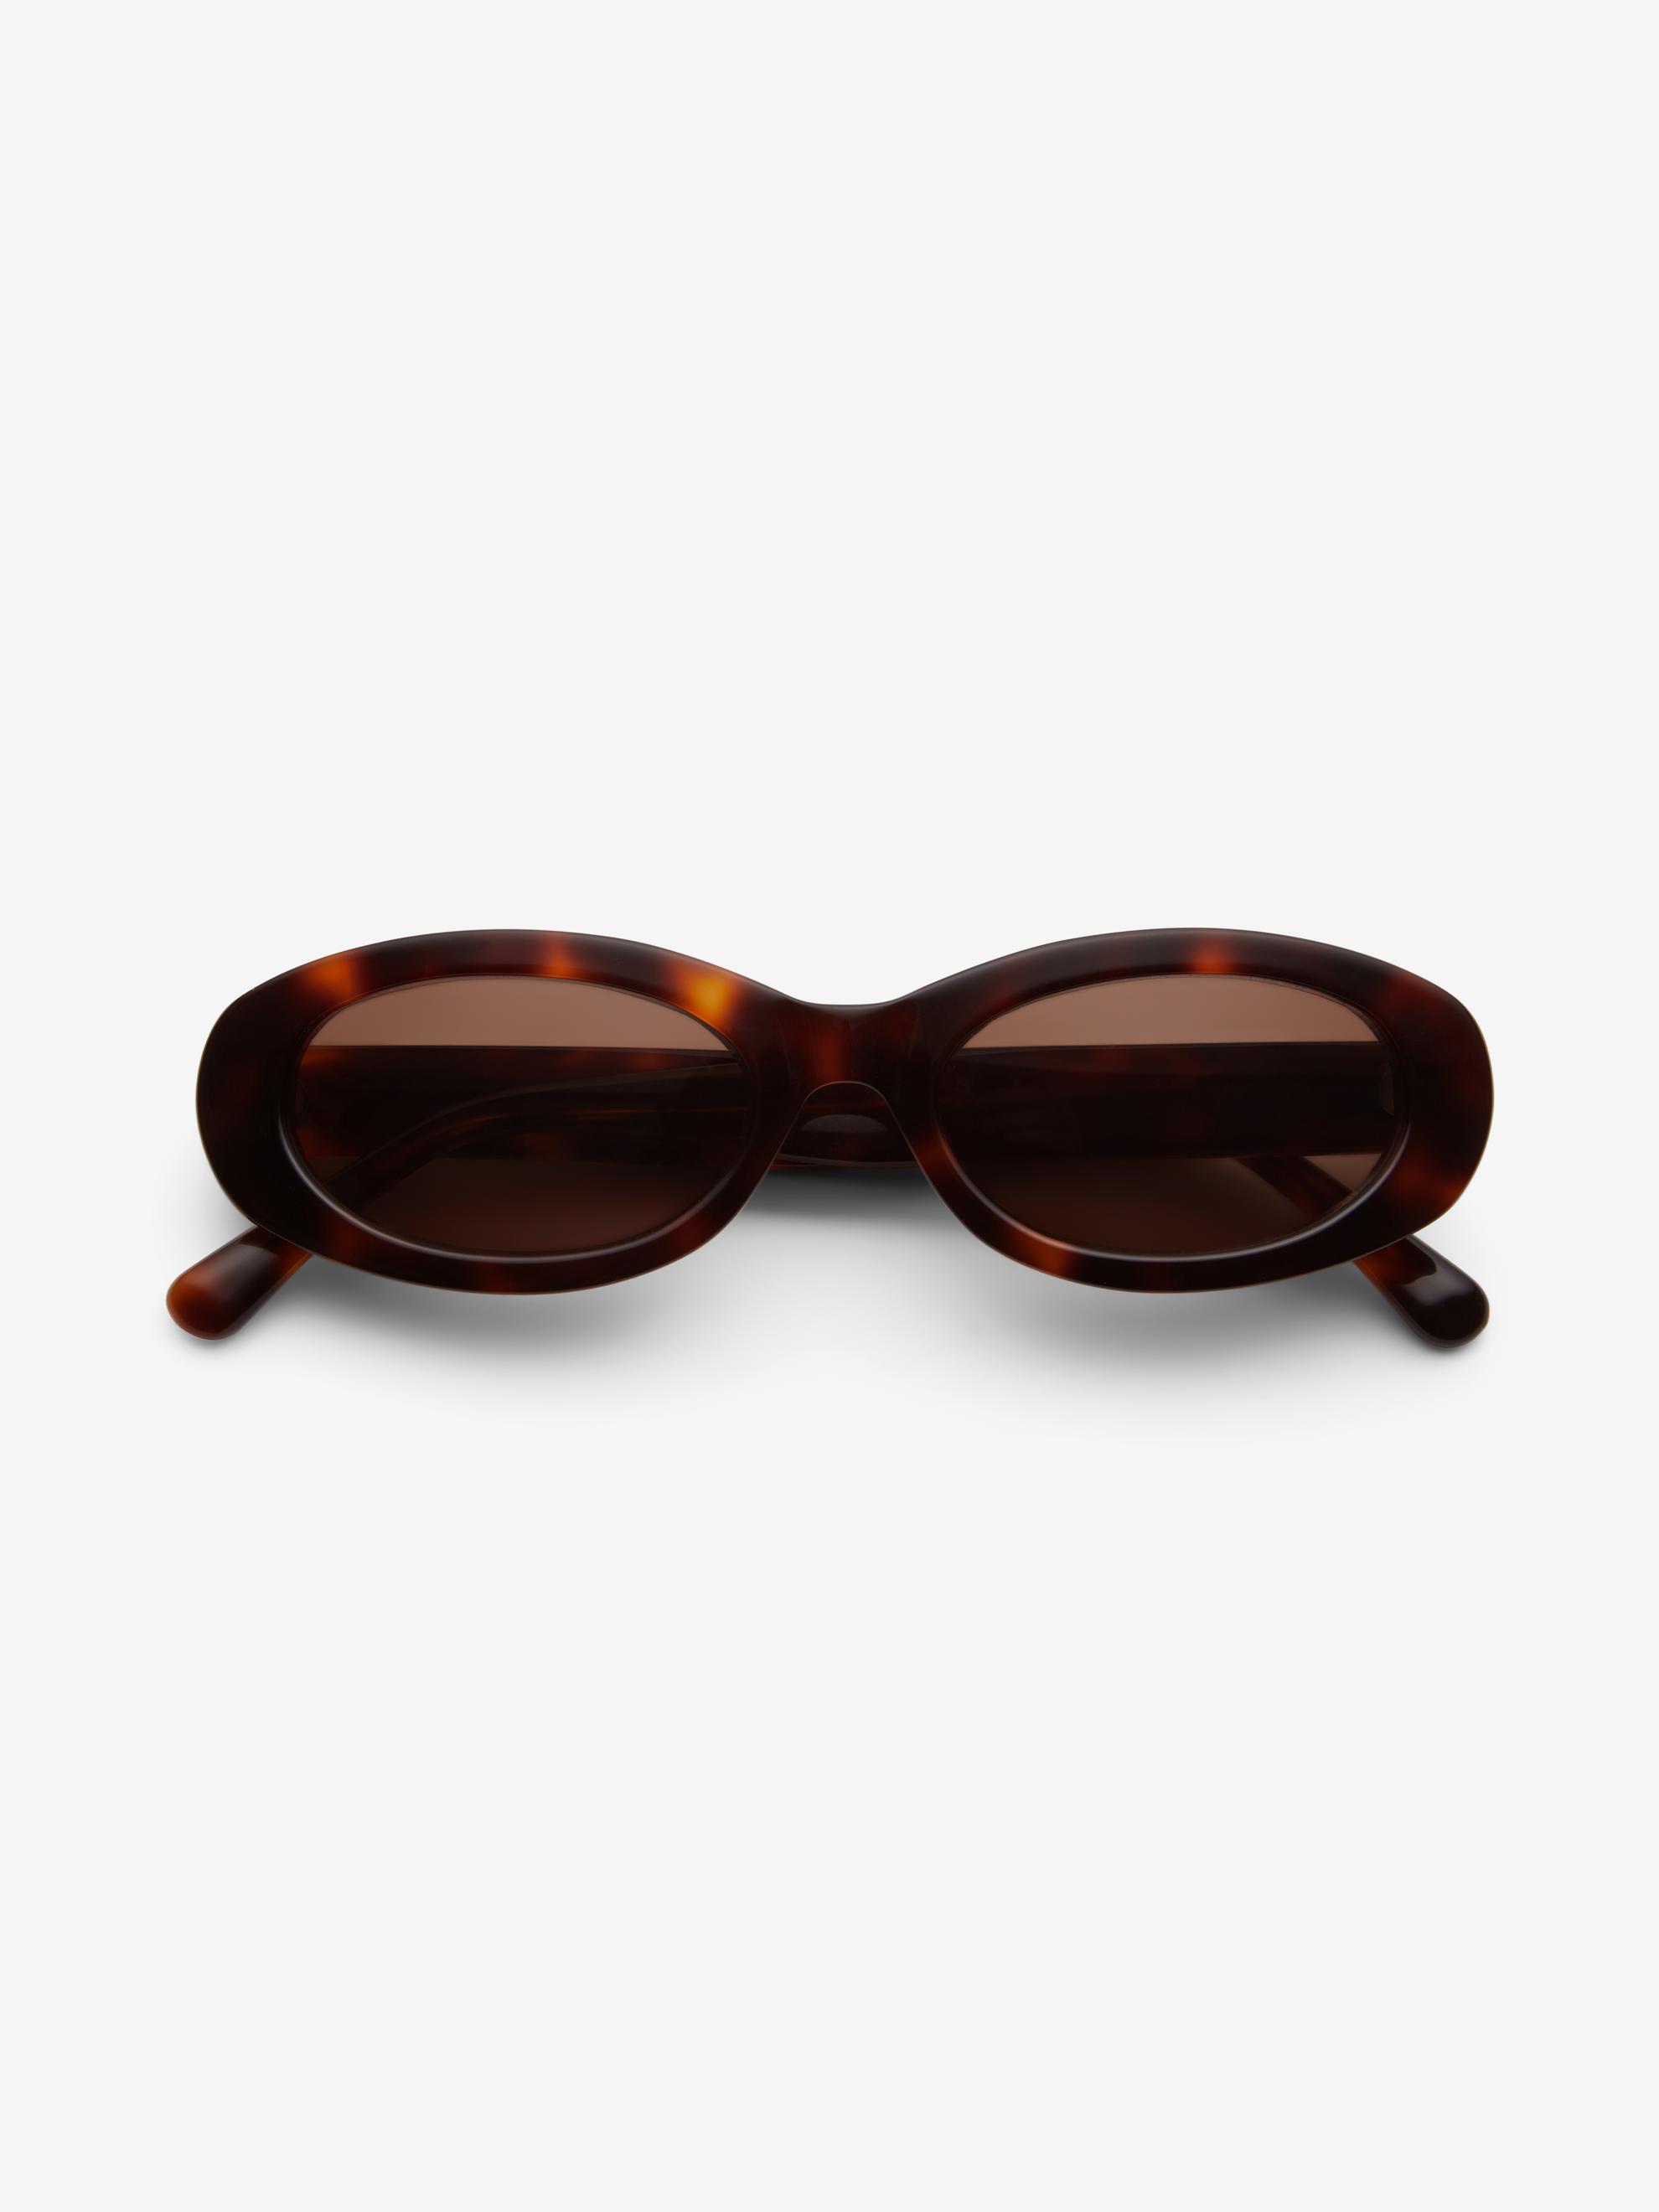 Wide oval sunglasses för 1800 kr på Dagmar